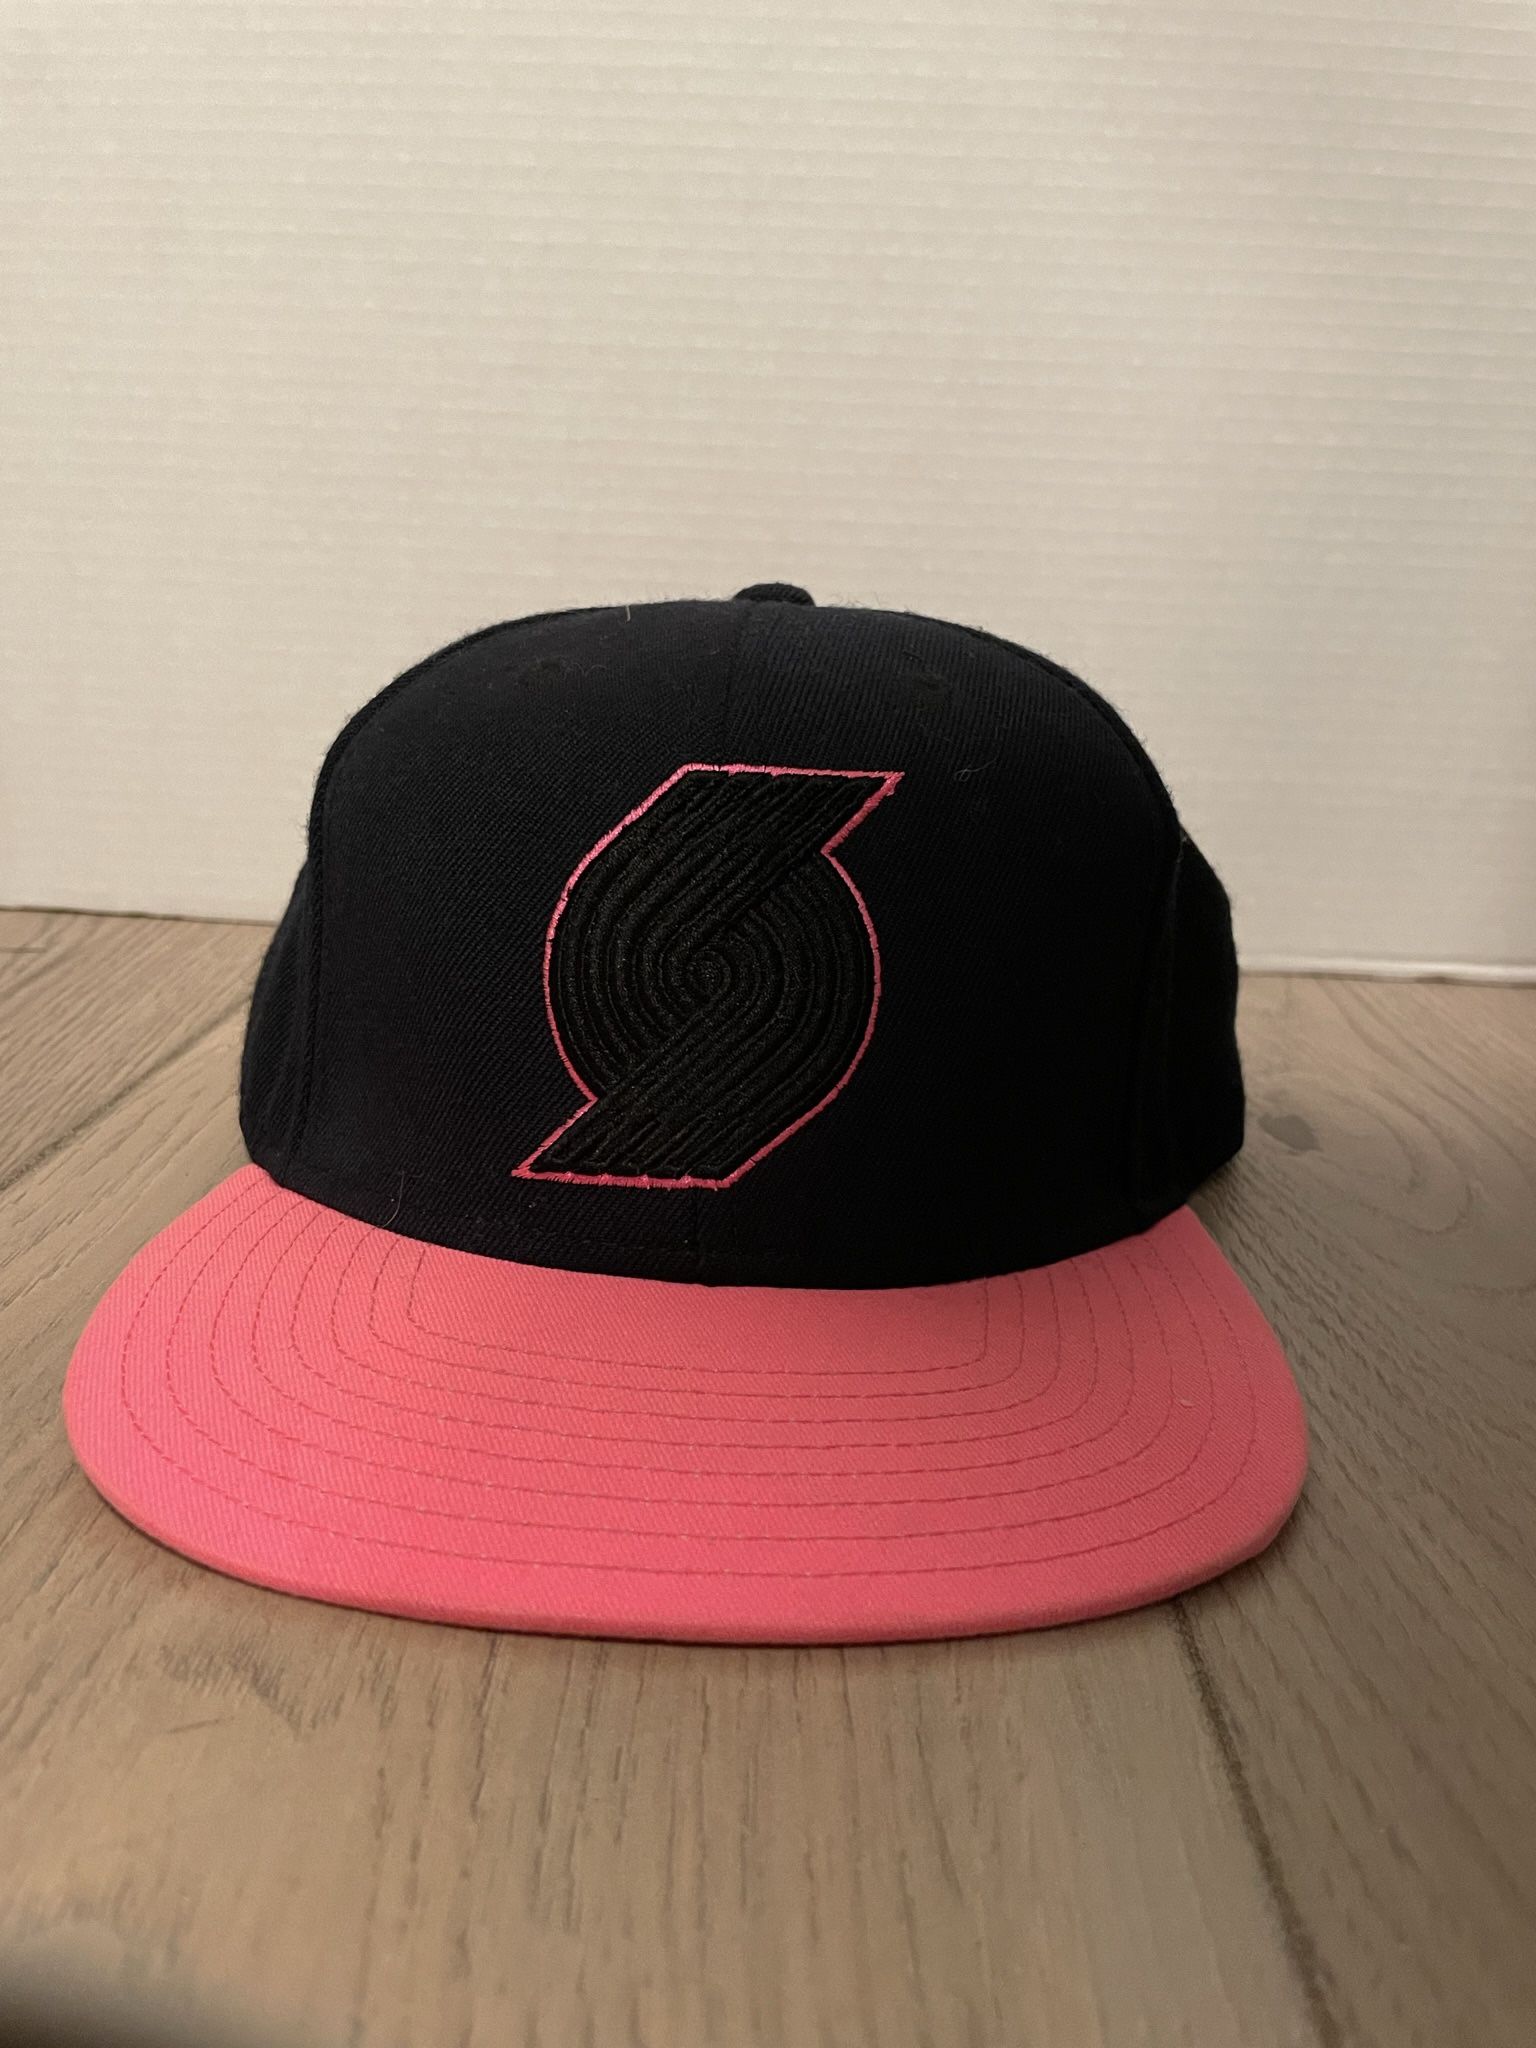 Portland Trailblazers Pink One Size Hat